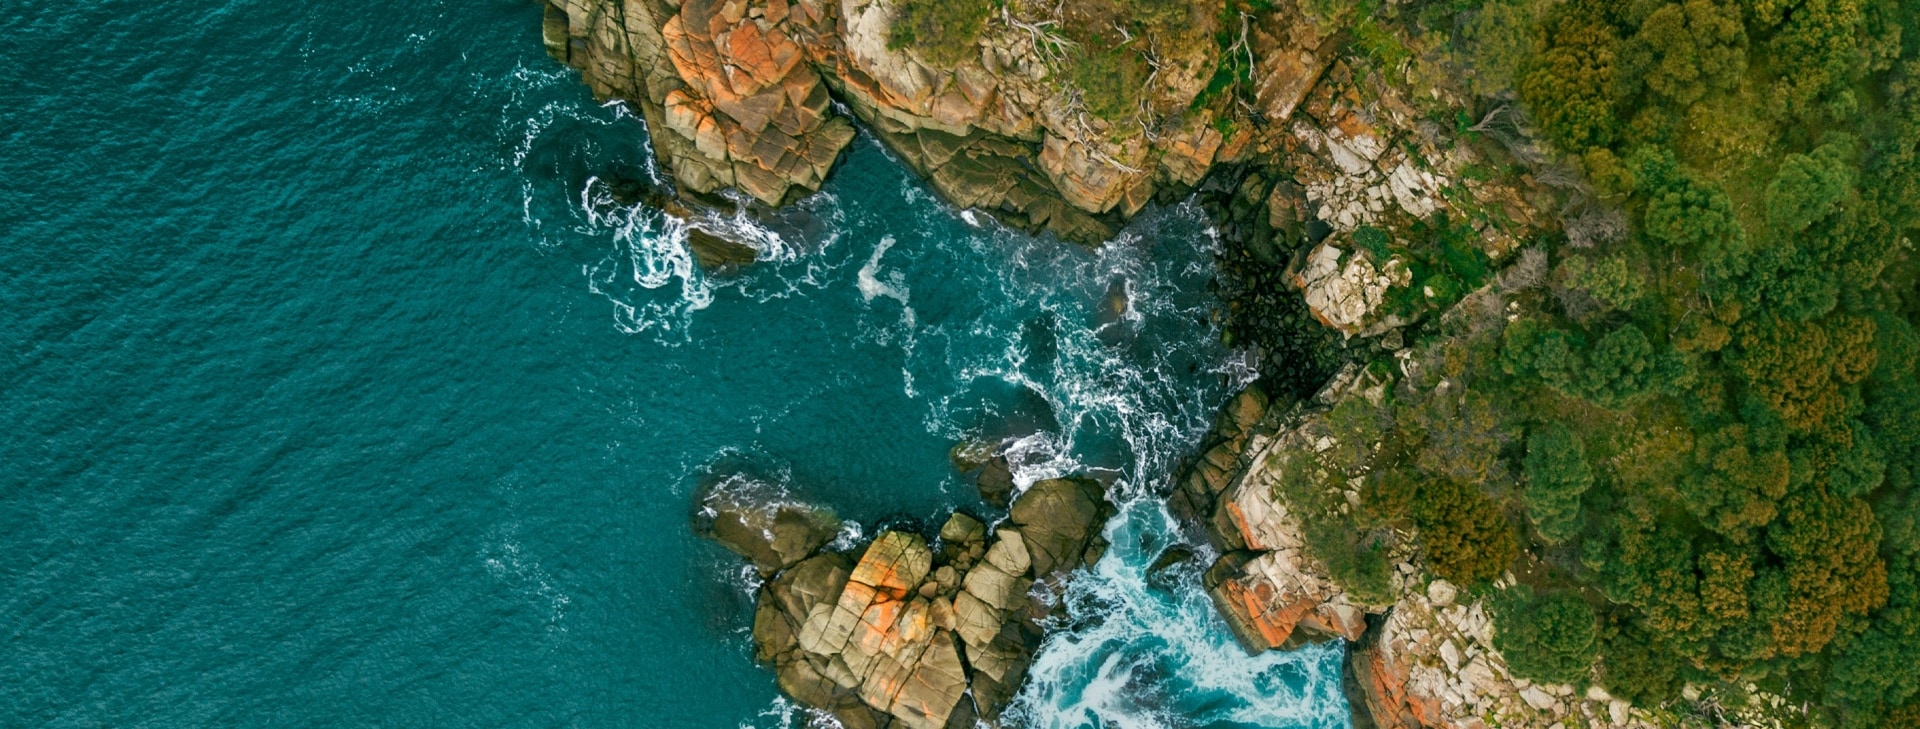 Bruny Island, Tasmania © Georges Antoni